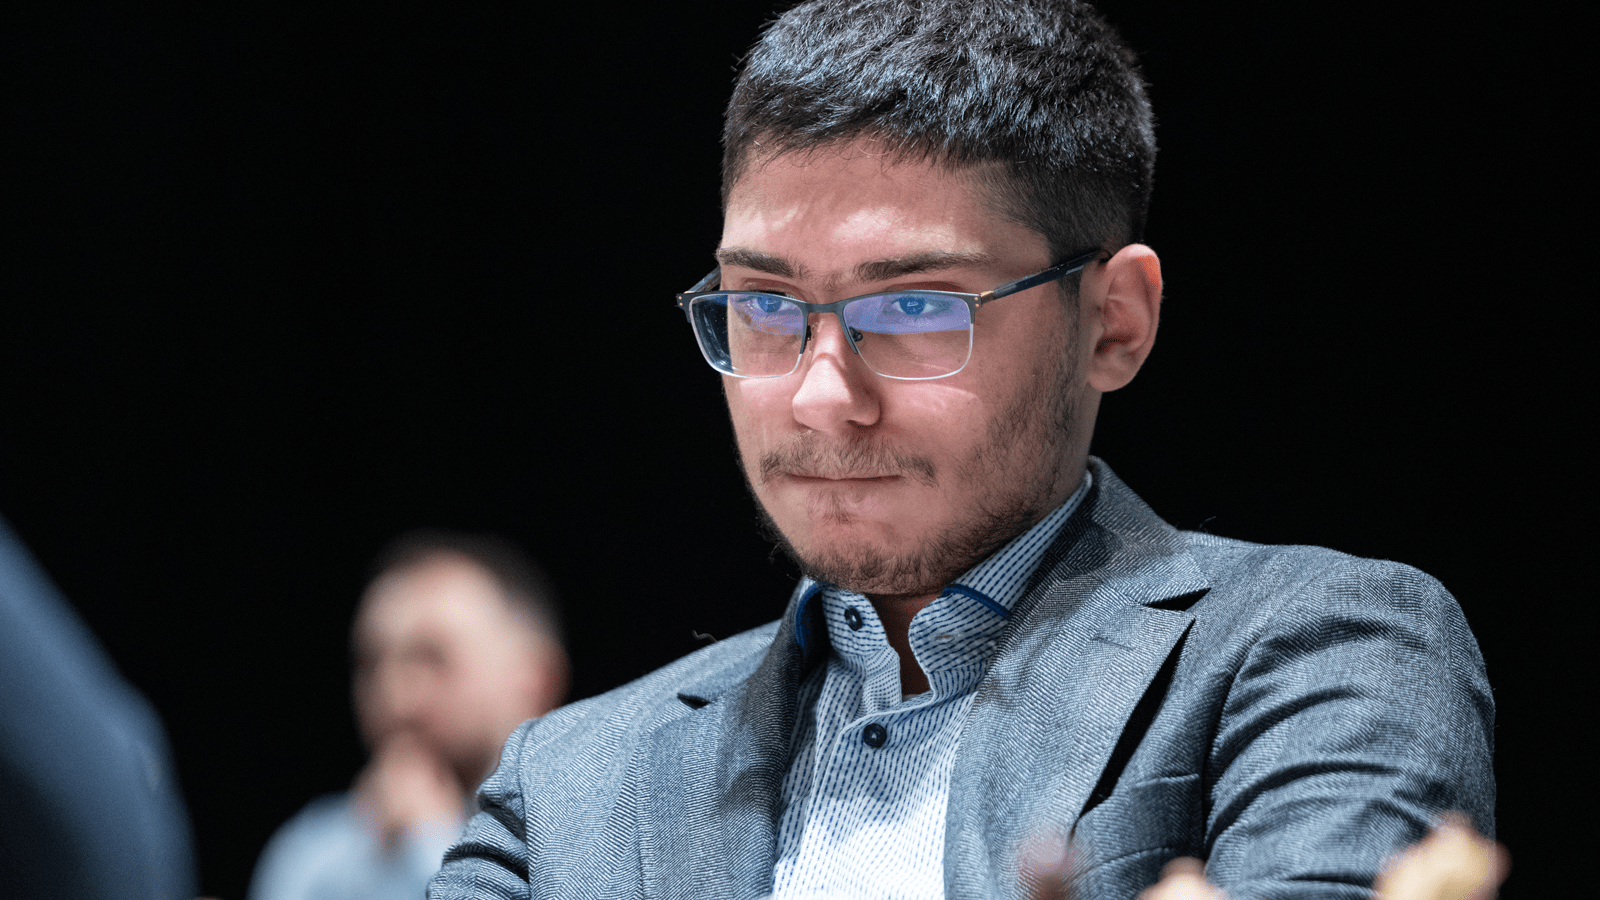 Caruana, Firouzja starp uzvarētājiem ar FIDE Chess.com Grand Swiss startu Rīgā